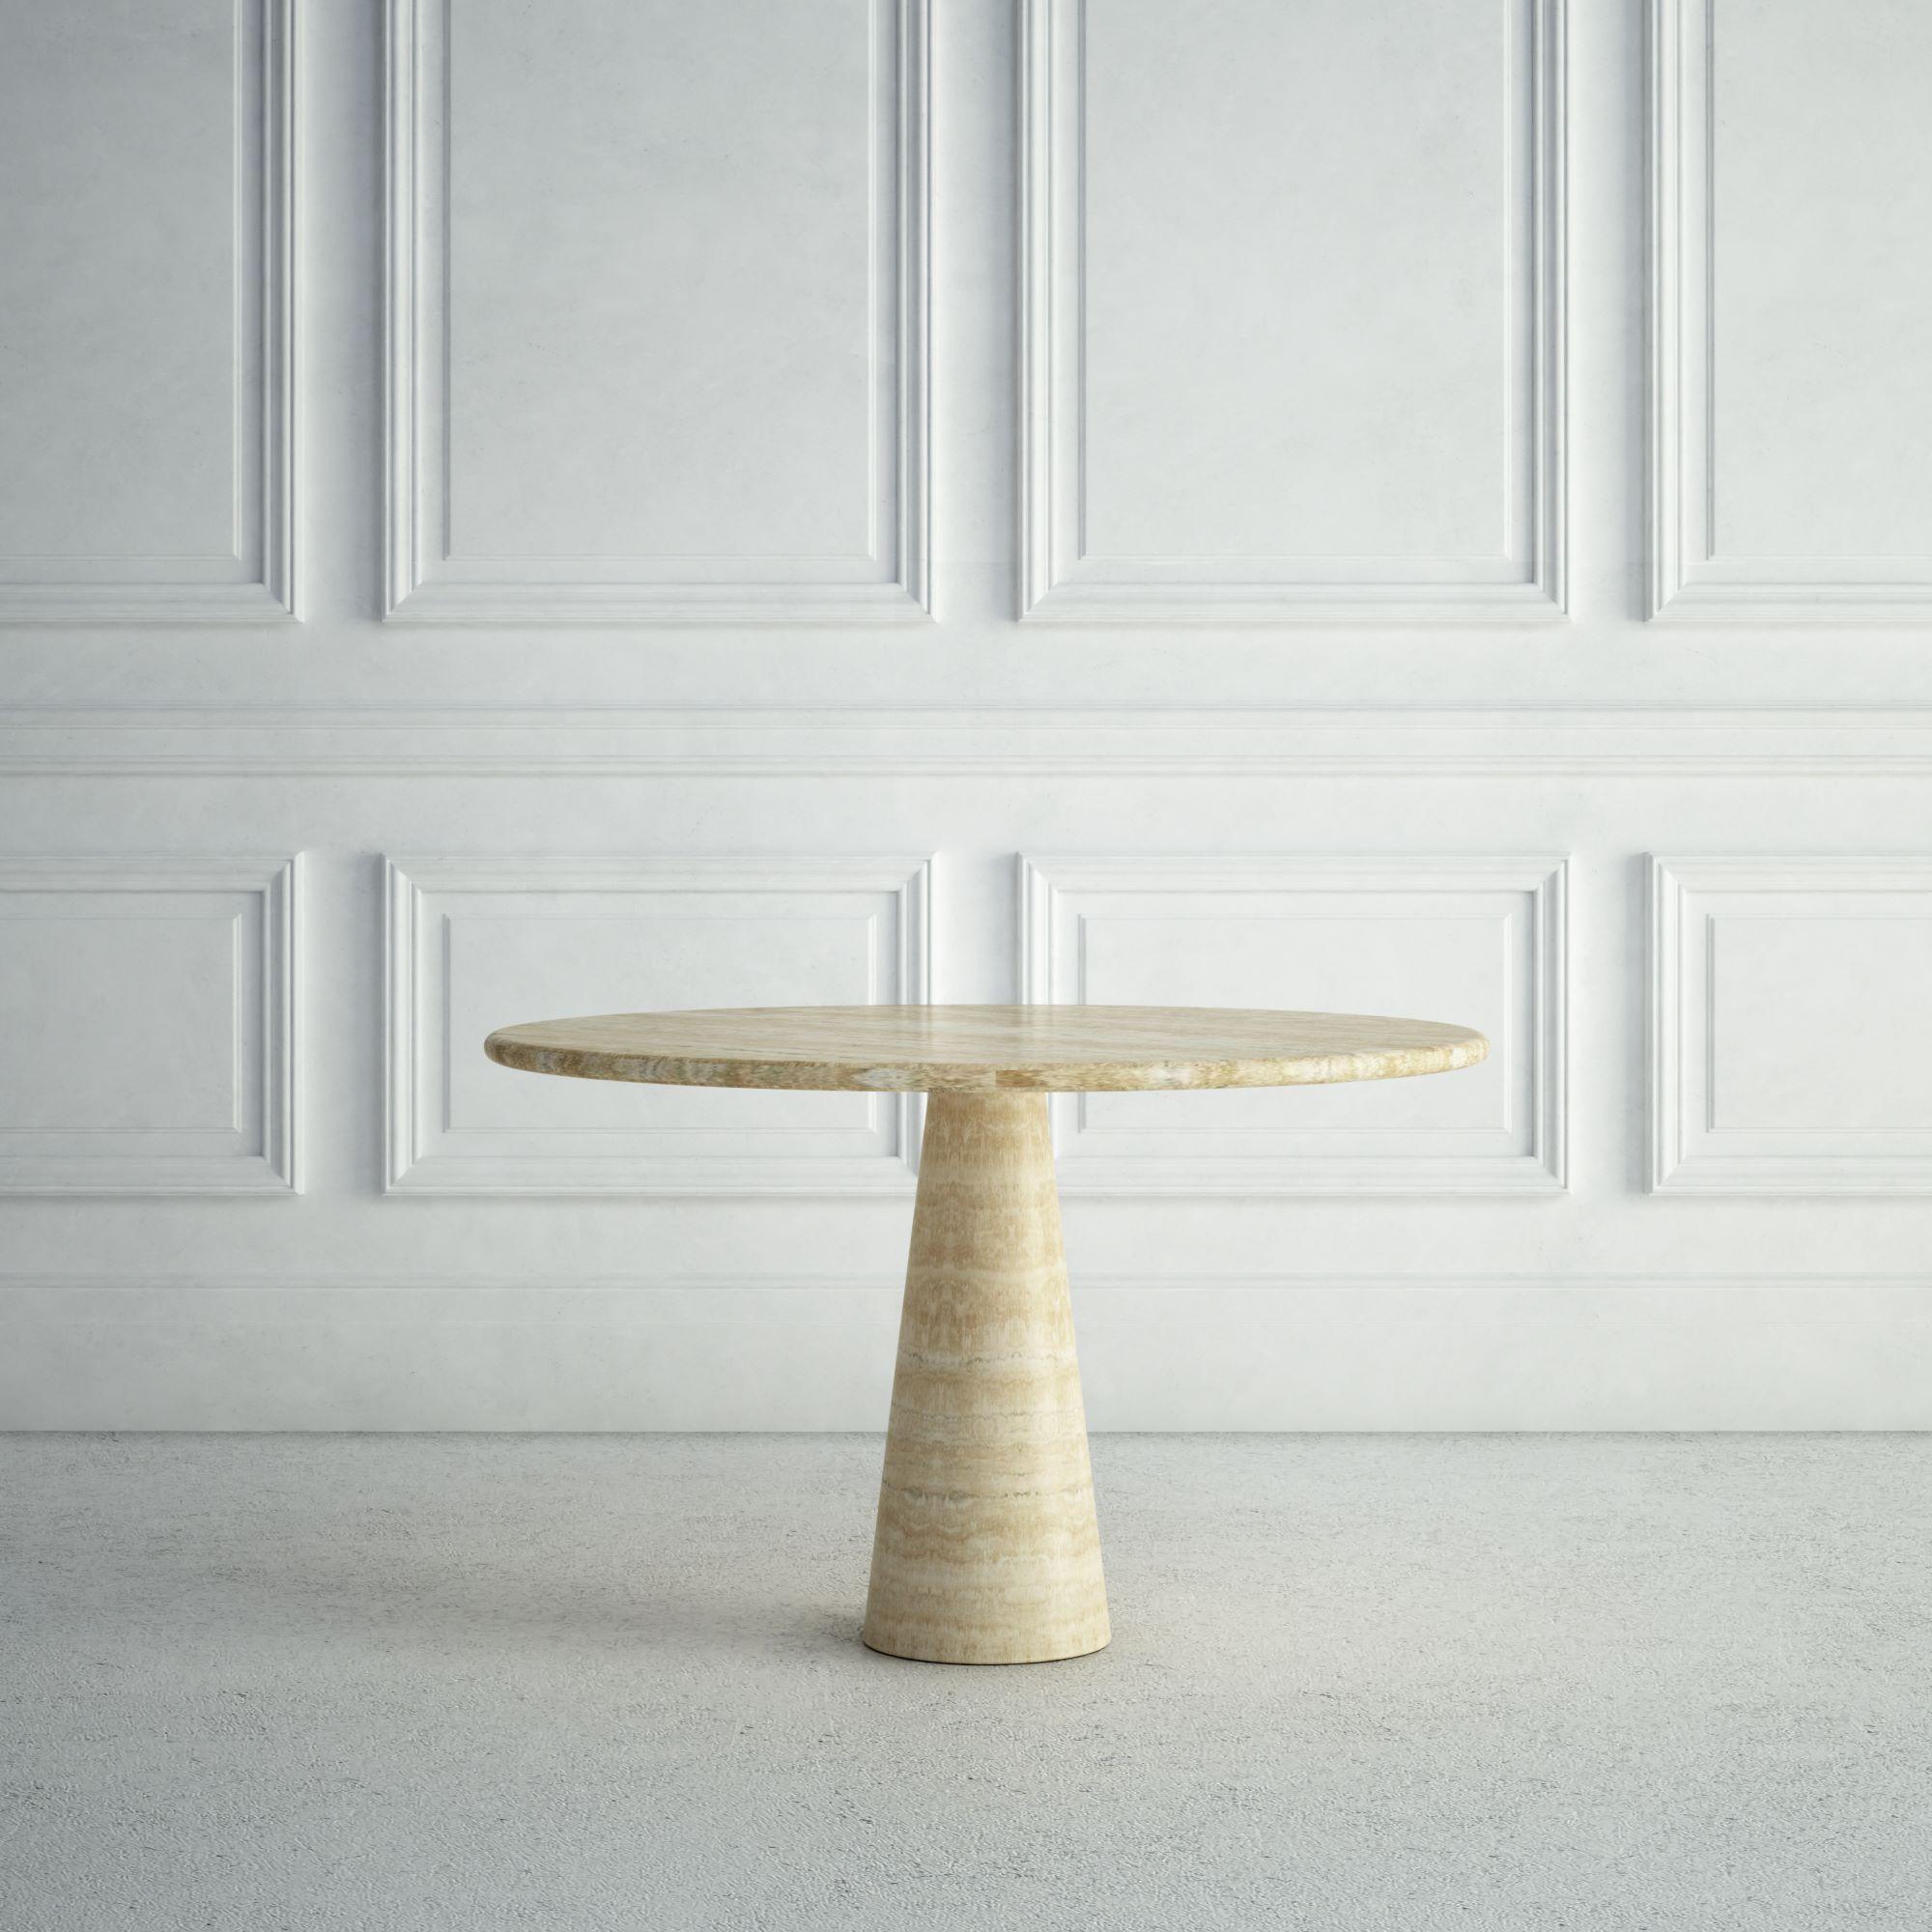 Der Margaux ist ein kleinerer, moderner Esstisch aus Stein mit einer runden Platte und einer abgerundeten Kante.  Die Basis ist ebenfalls abgerundet, verjüngt sich aber nach oben hin und bildet eine verspielte konische Form.  All diese Elemente